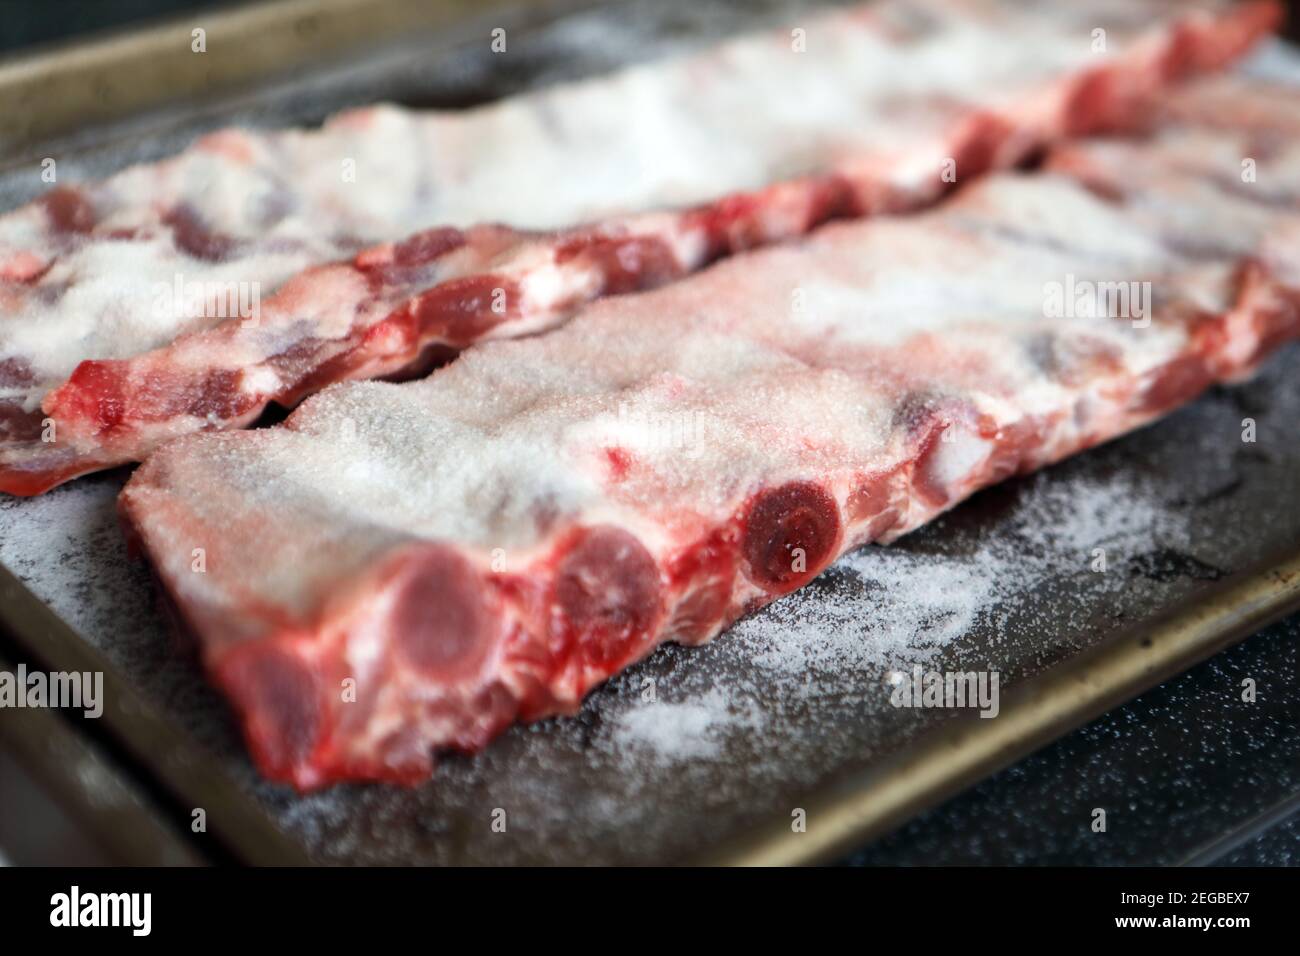 Costillas de cerdo cubiertas de sal, brining seco, que se lava después de una hora o así antes de cocinar Foto de stock